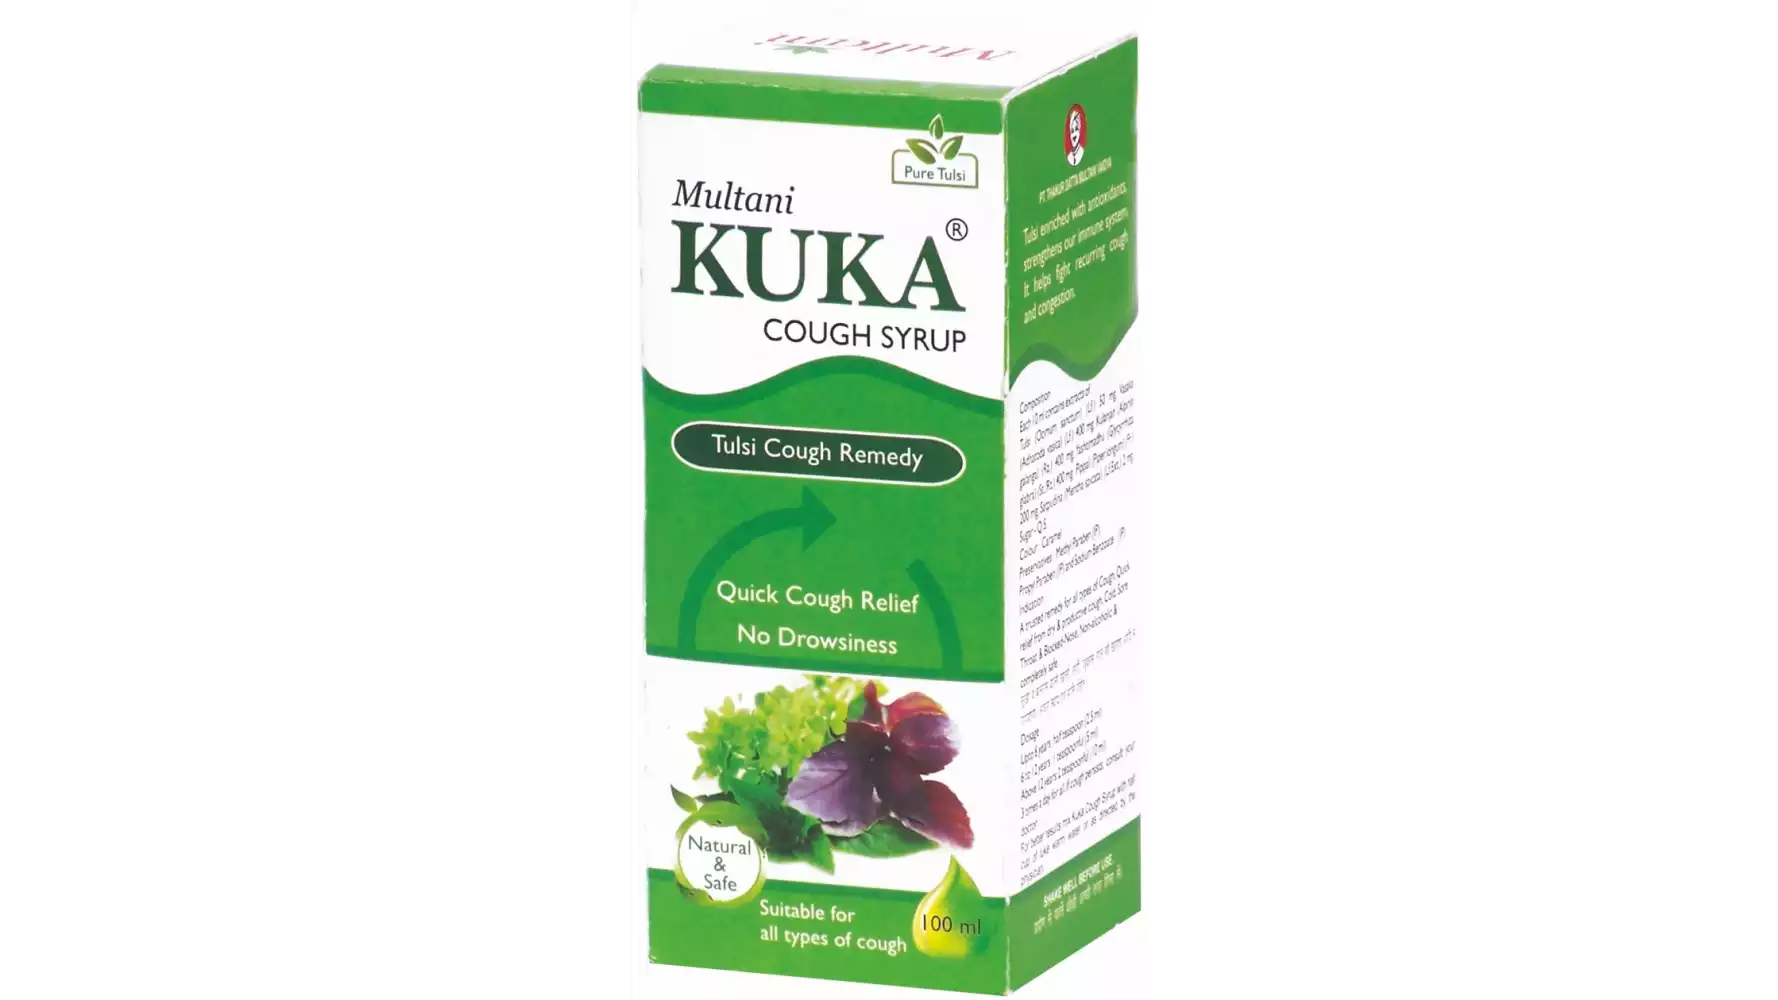 Multani Kuka Cough Syrup (100ml)